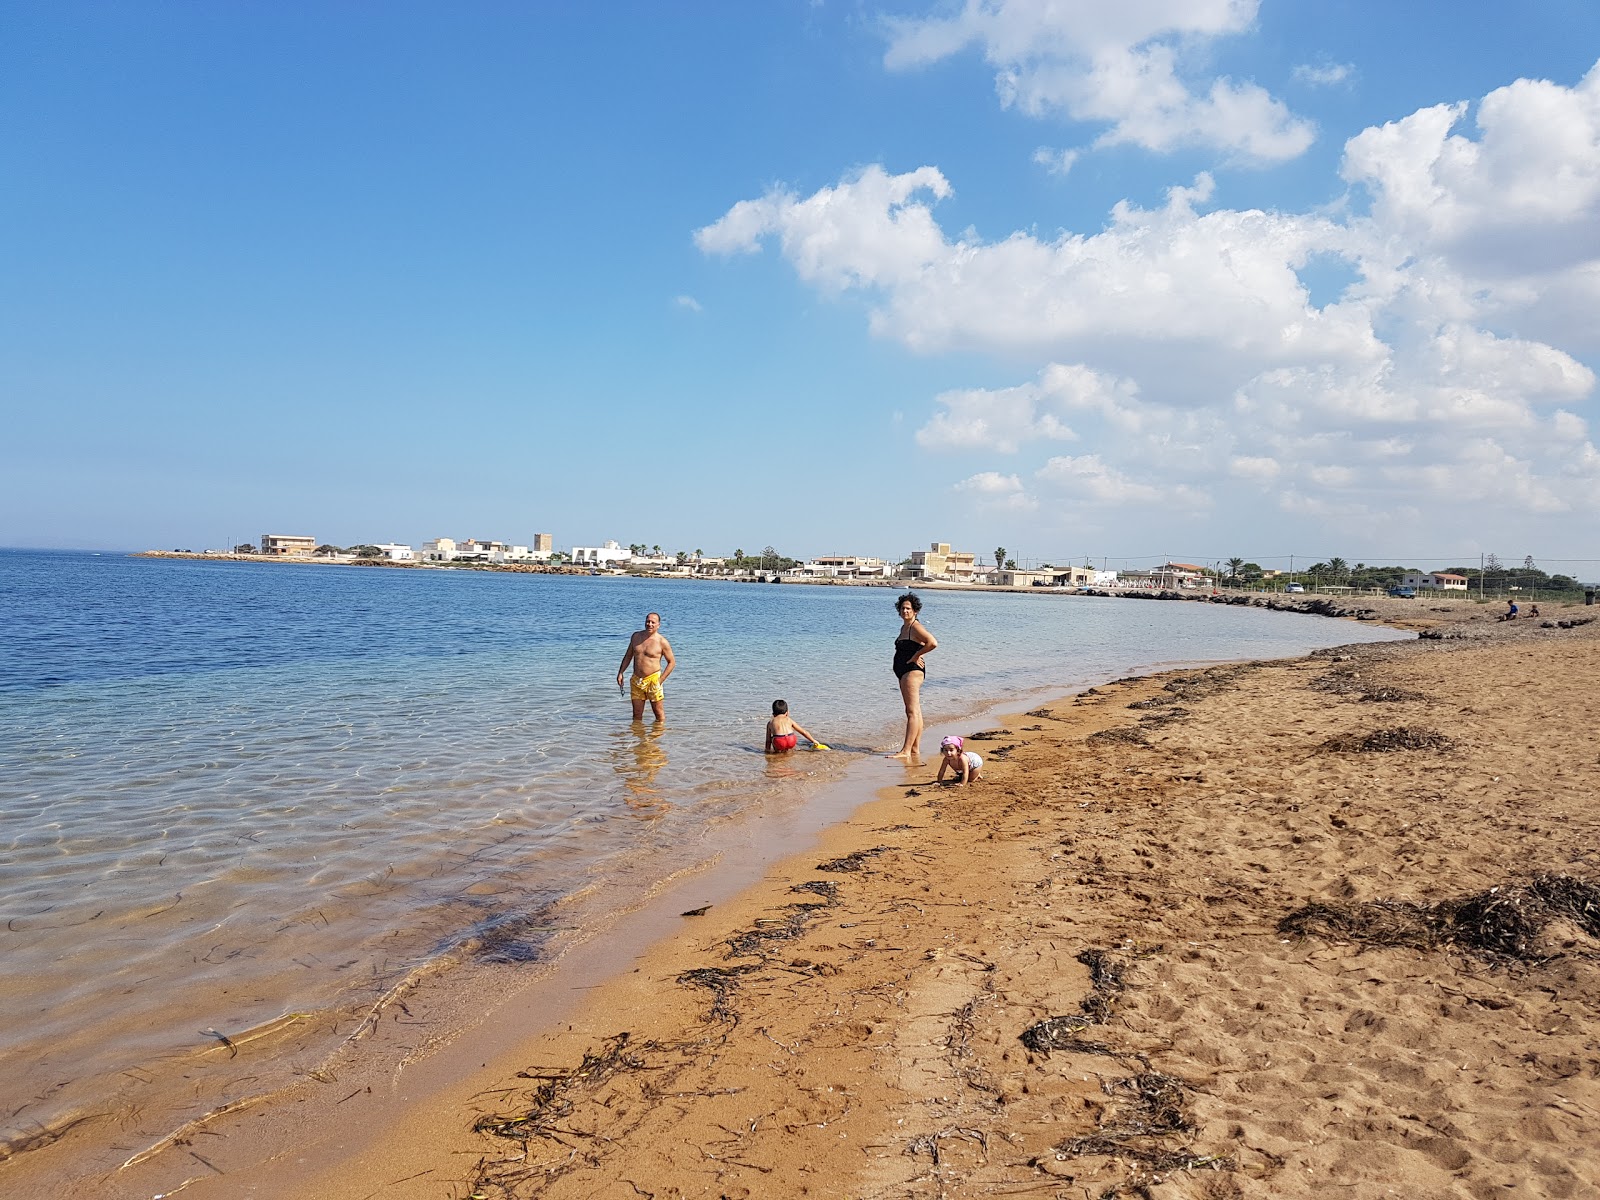 Margi Milo beach'in fotoğrafı kahverengi kum yüzey ile